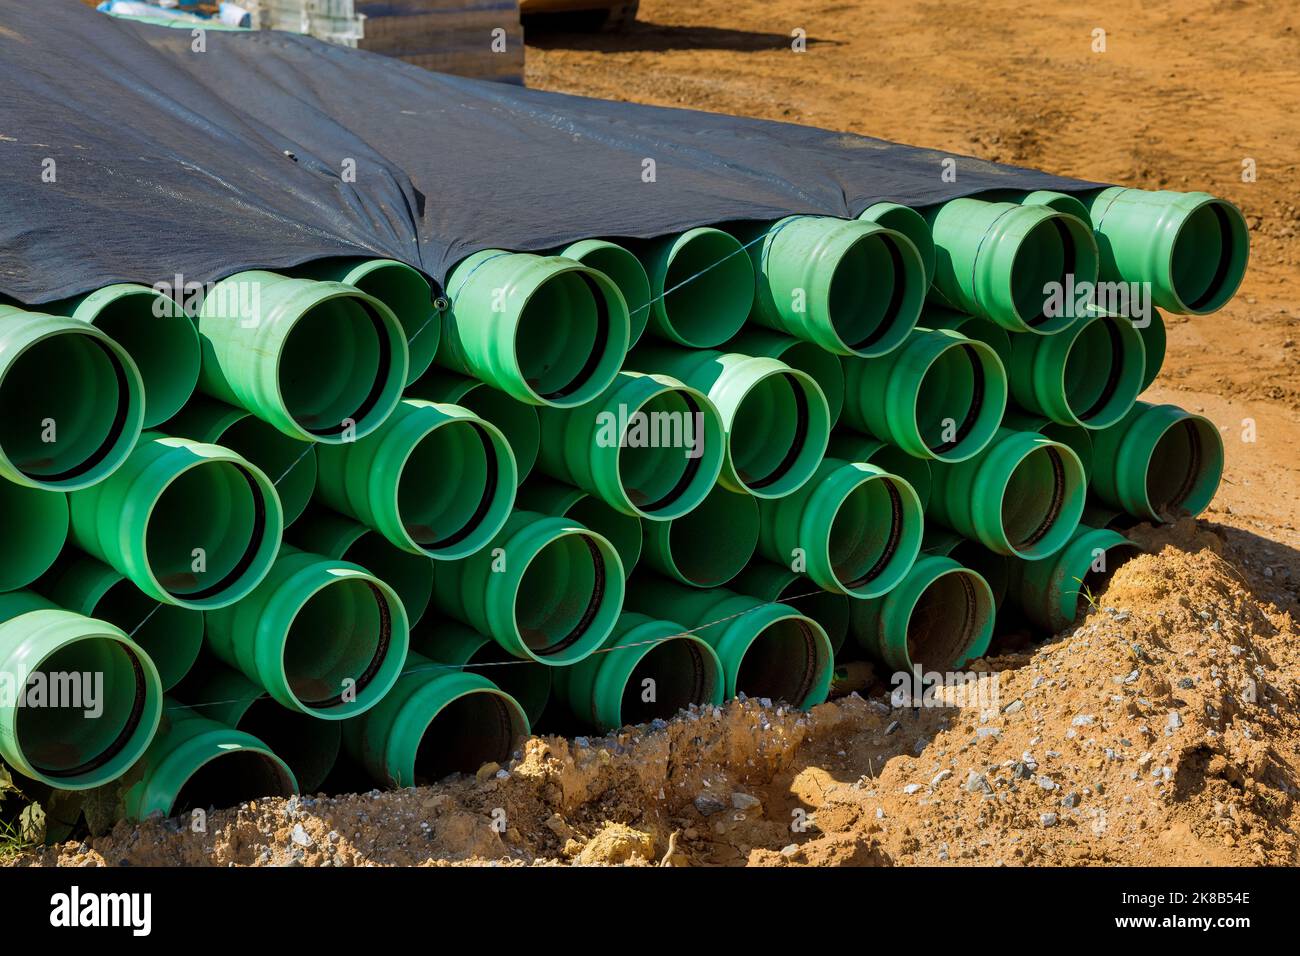 Dans les chantiers de construction, les tuyaux en plastique vert PVC sont utilisés comme matériau d'égout dans la zone de travail Banque D'Images